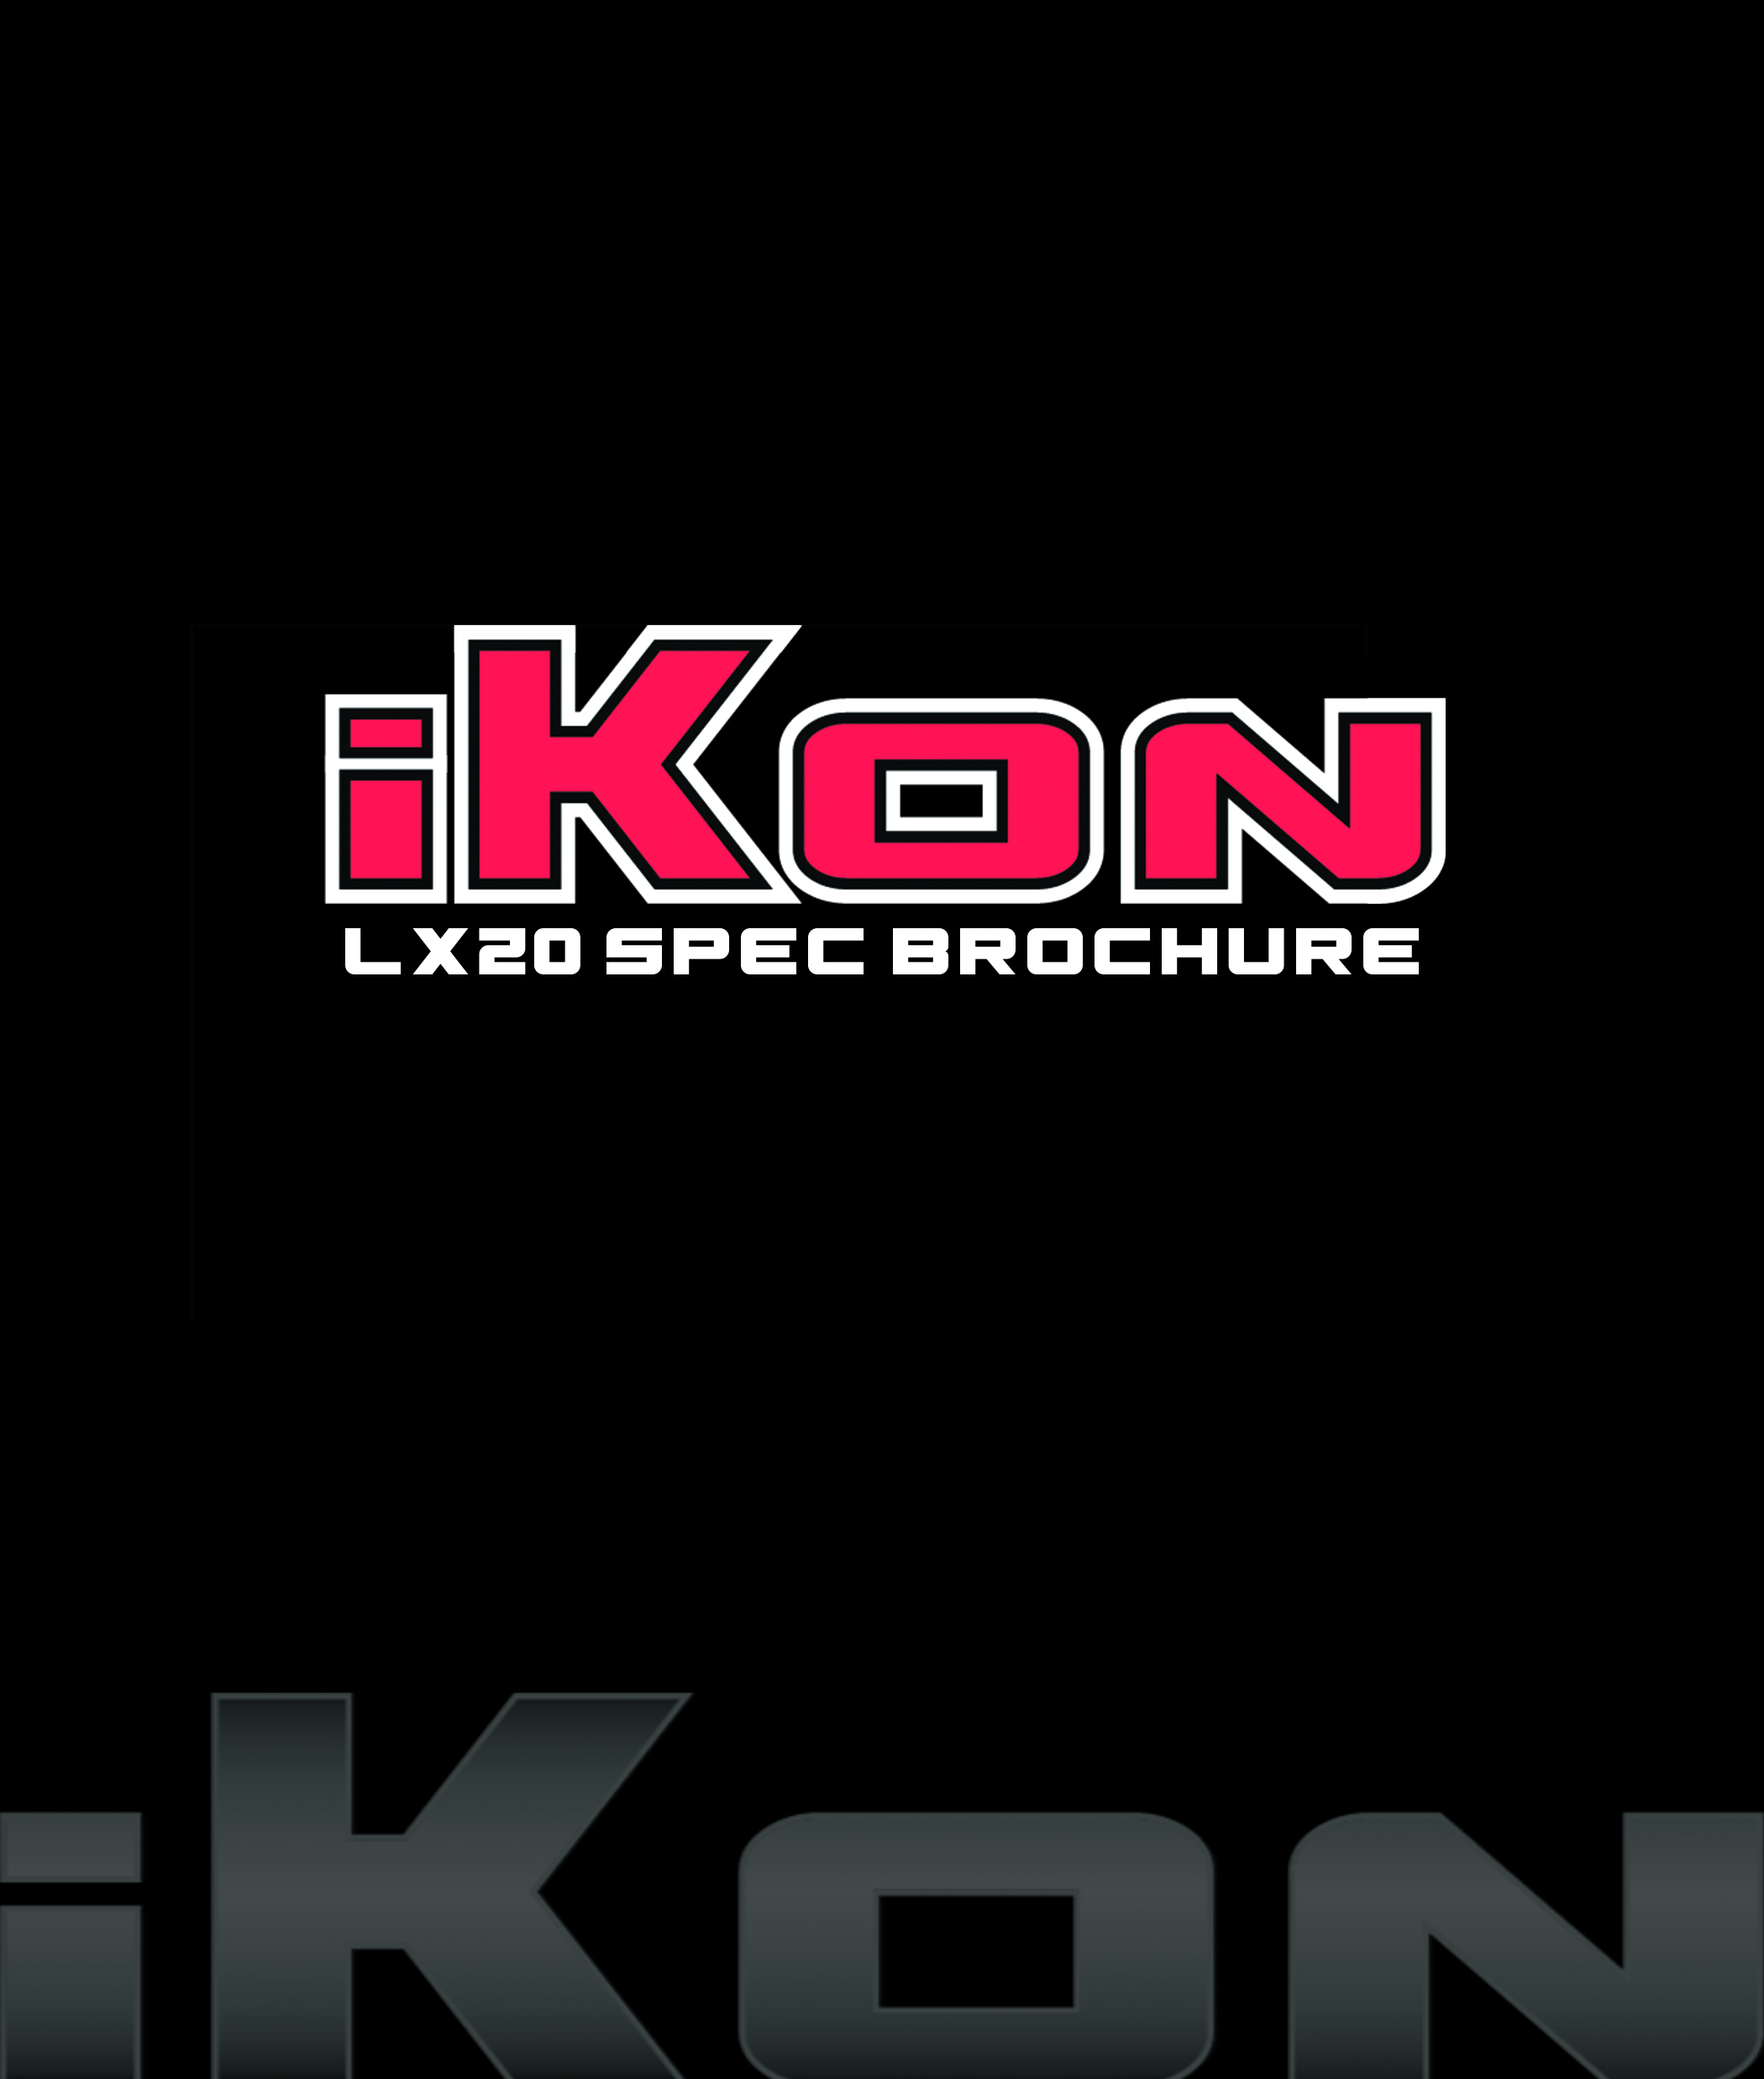 iKon LX20 Spec Brochure